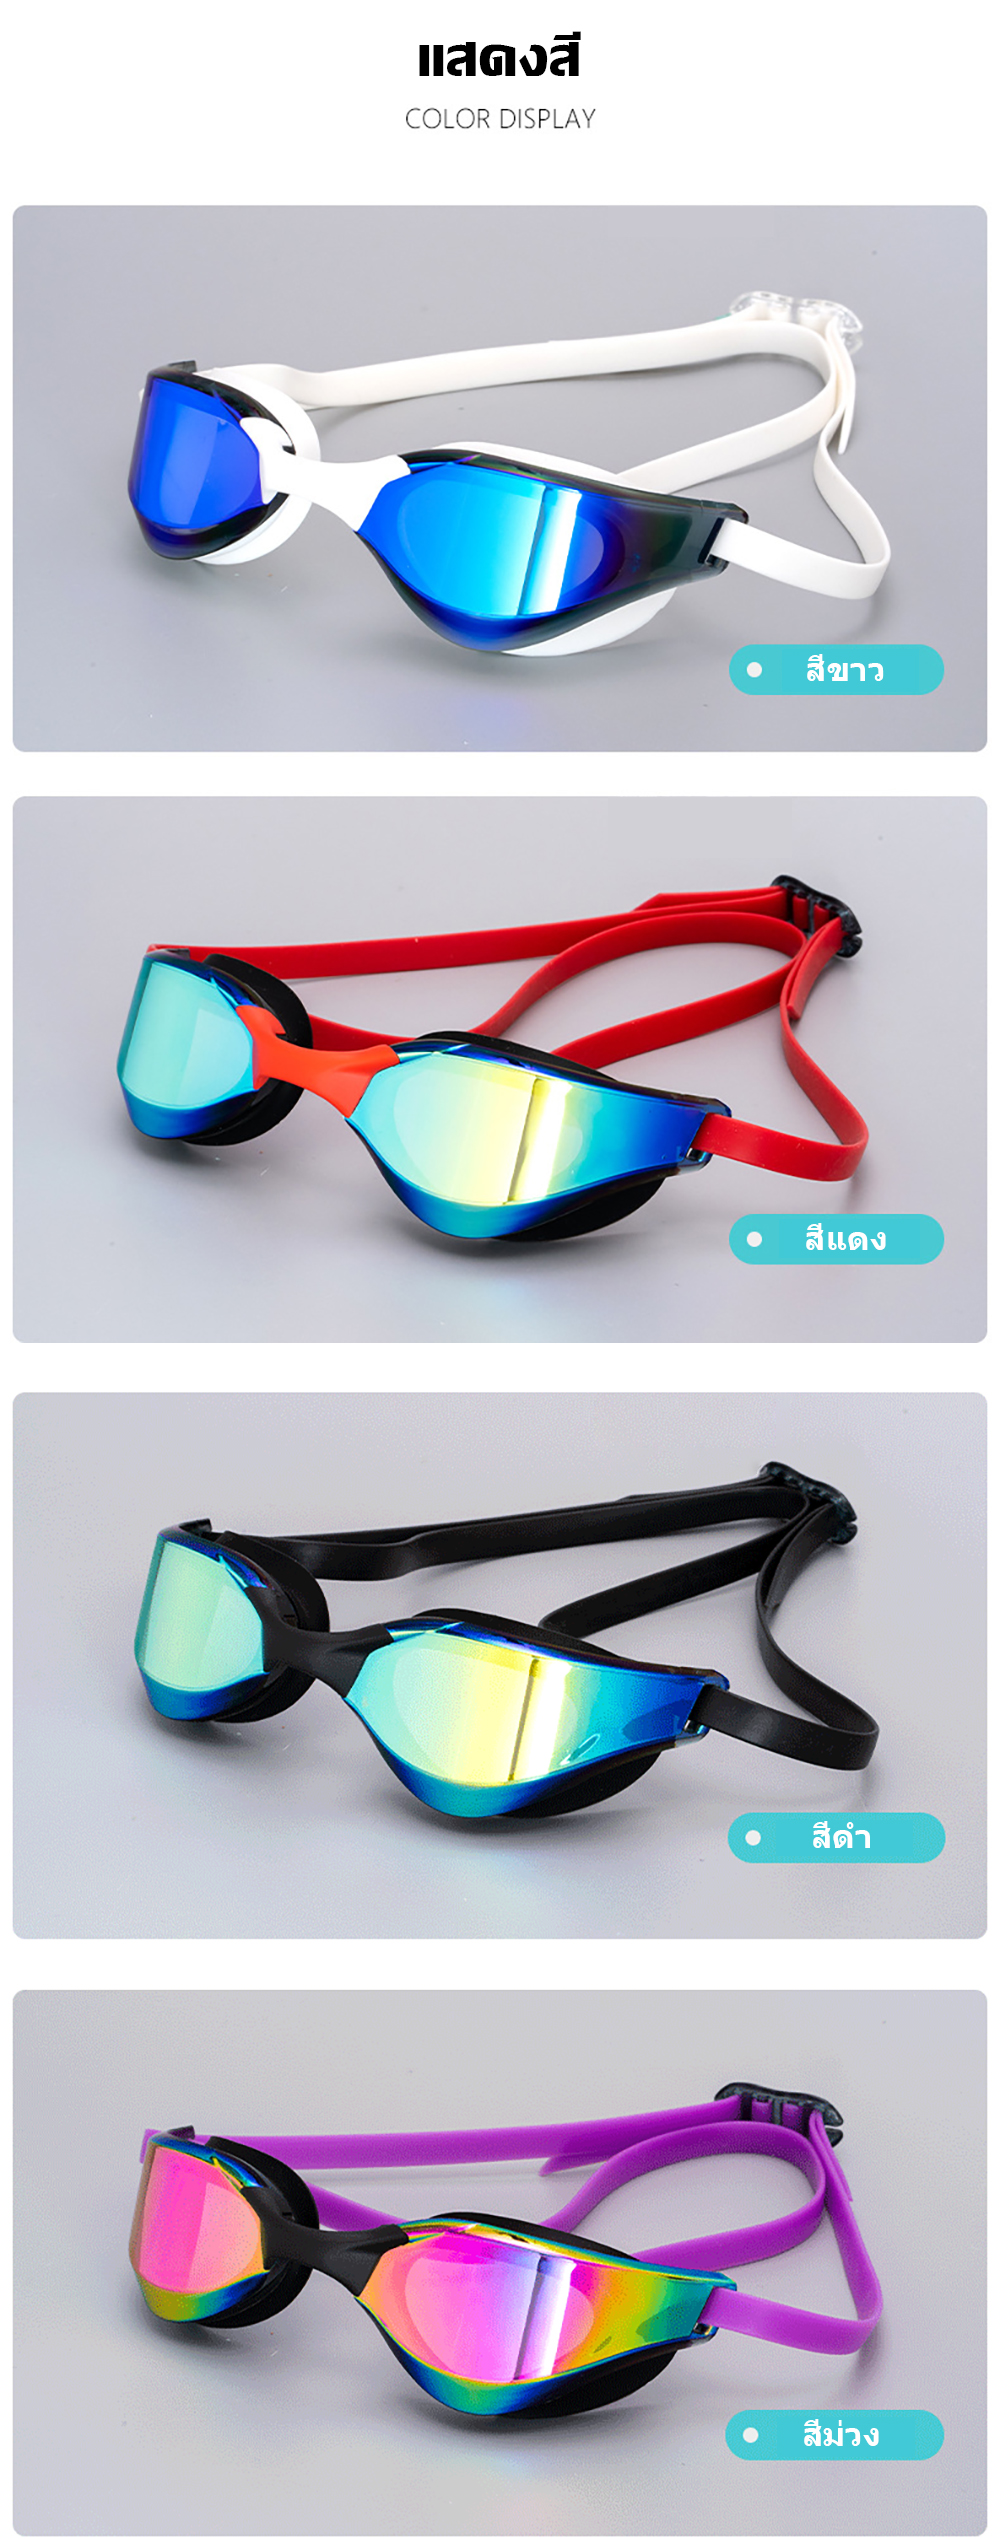 เกี่ยวกับสินค้า แว่นตาว่ายน้ำผู้ใหญ่ HD กันน้ำและป้องกันหมอก Swimming Goggles แว่นตาว่ายน้ำสำหรับผู้ใหญ่สำหรับฝึกการแข่งขันระดับมืออาชีพ